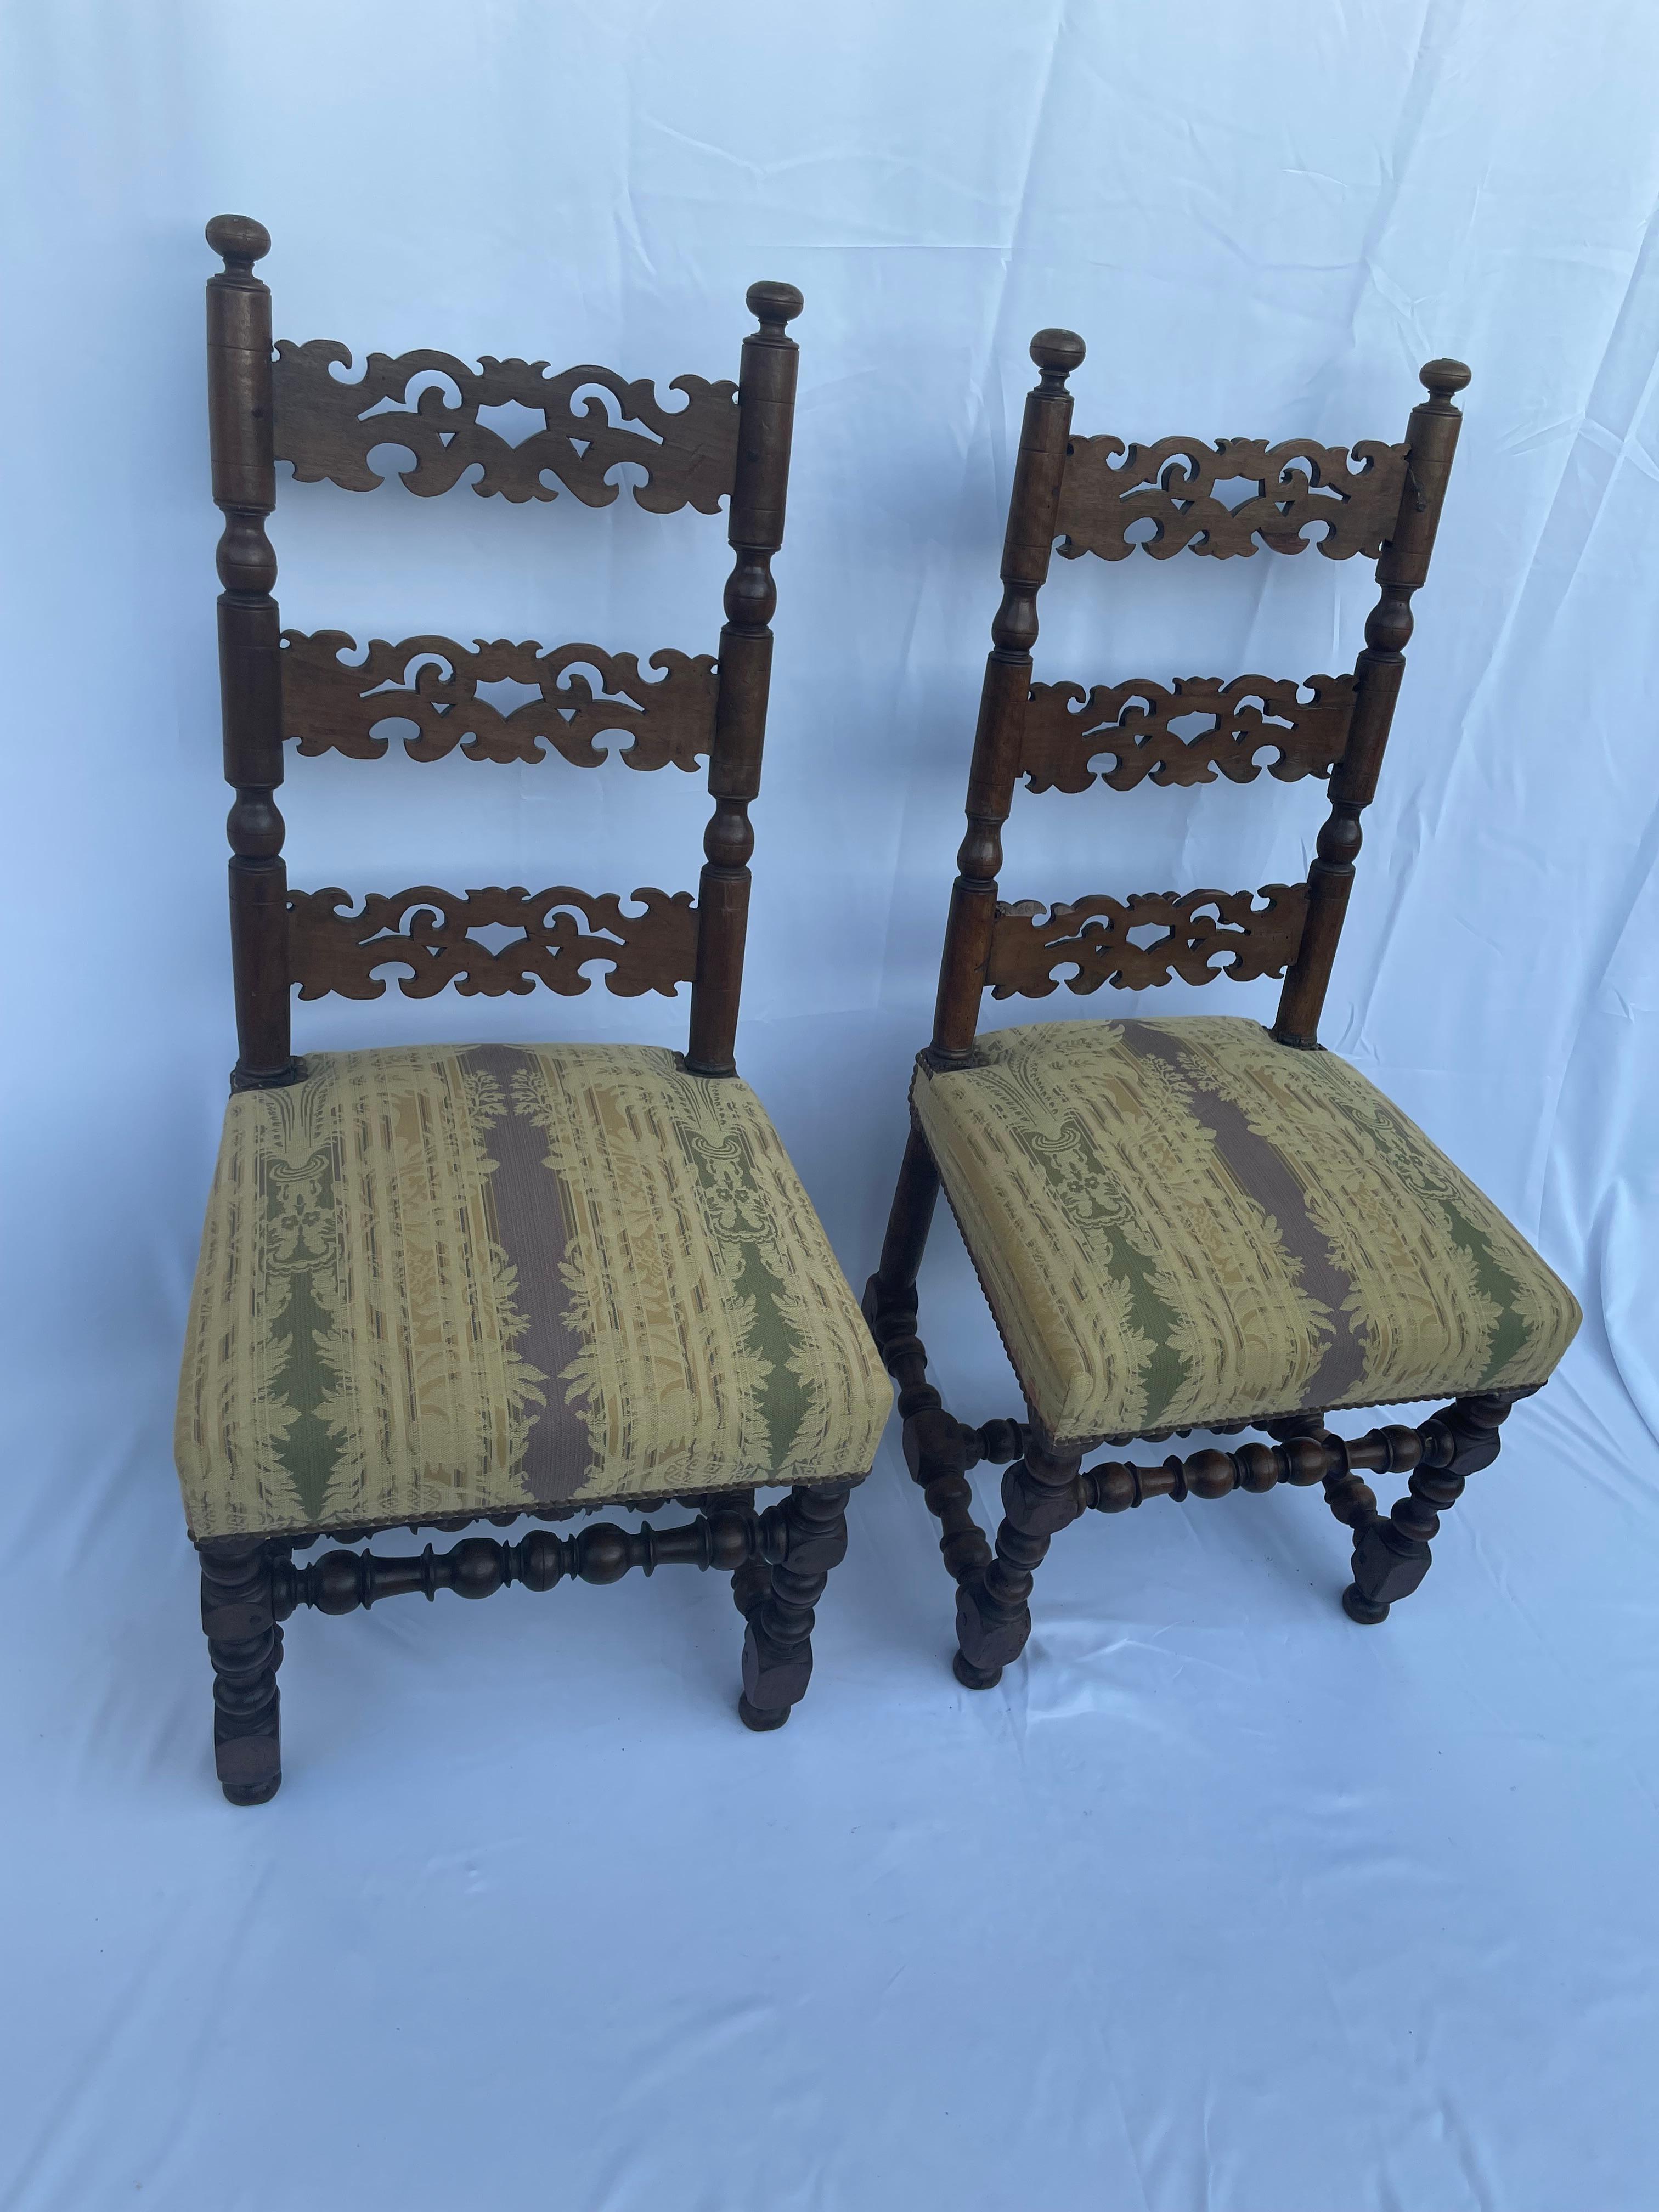 Schönes Paar französischer Nussbaumstühle aus dem 17. Jahrhundert, mit gedrechselten Beinen und gepolsterten Sitzen. Die Stuhllehne ist schön gemacht und offen in drei Teilen gearbeitet. Die gepolsterten Sitze sind in Senftönen gehalten und reich an